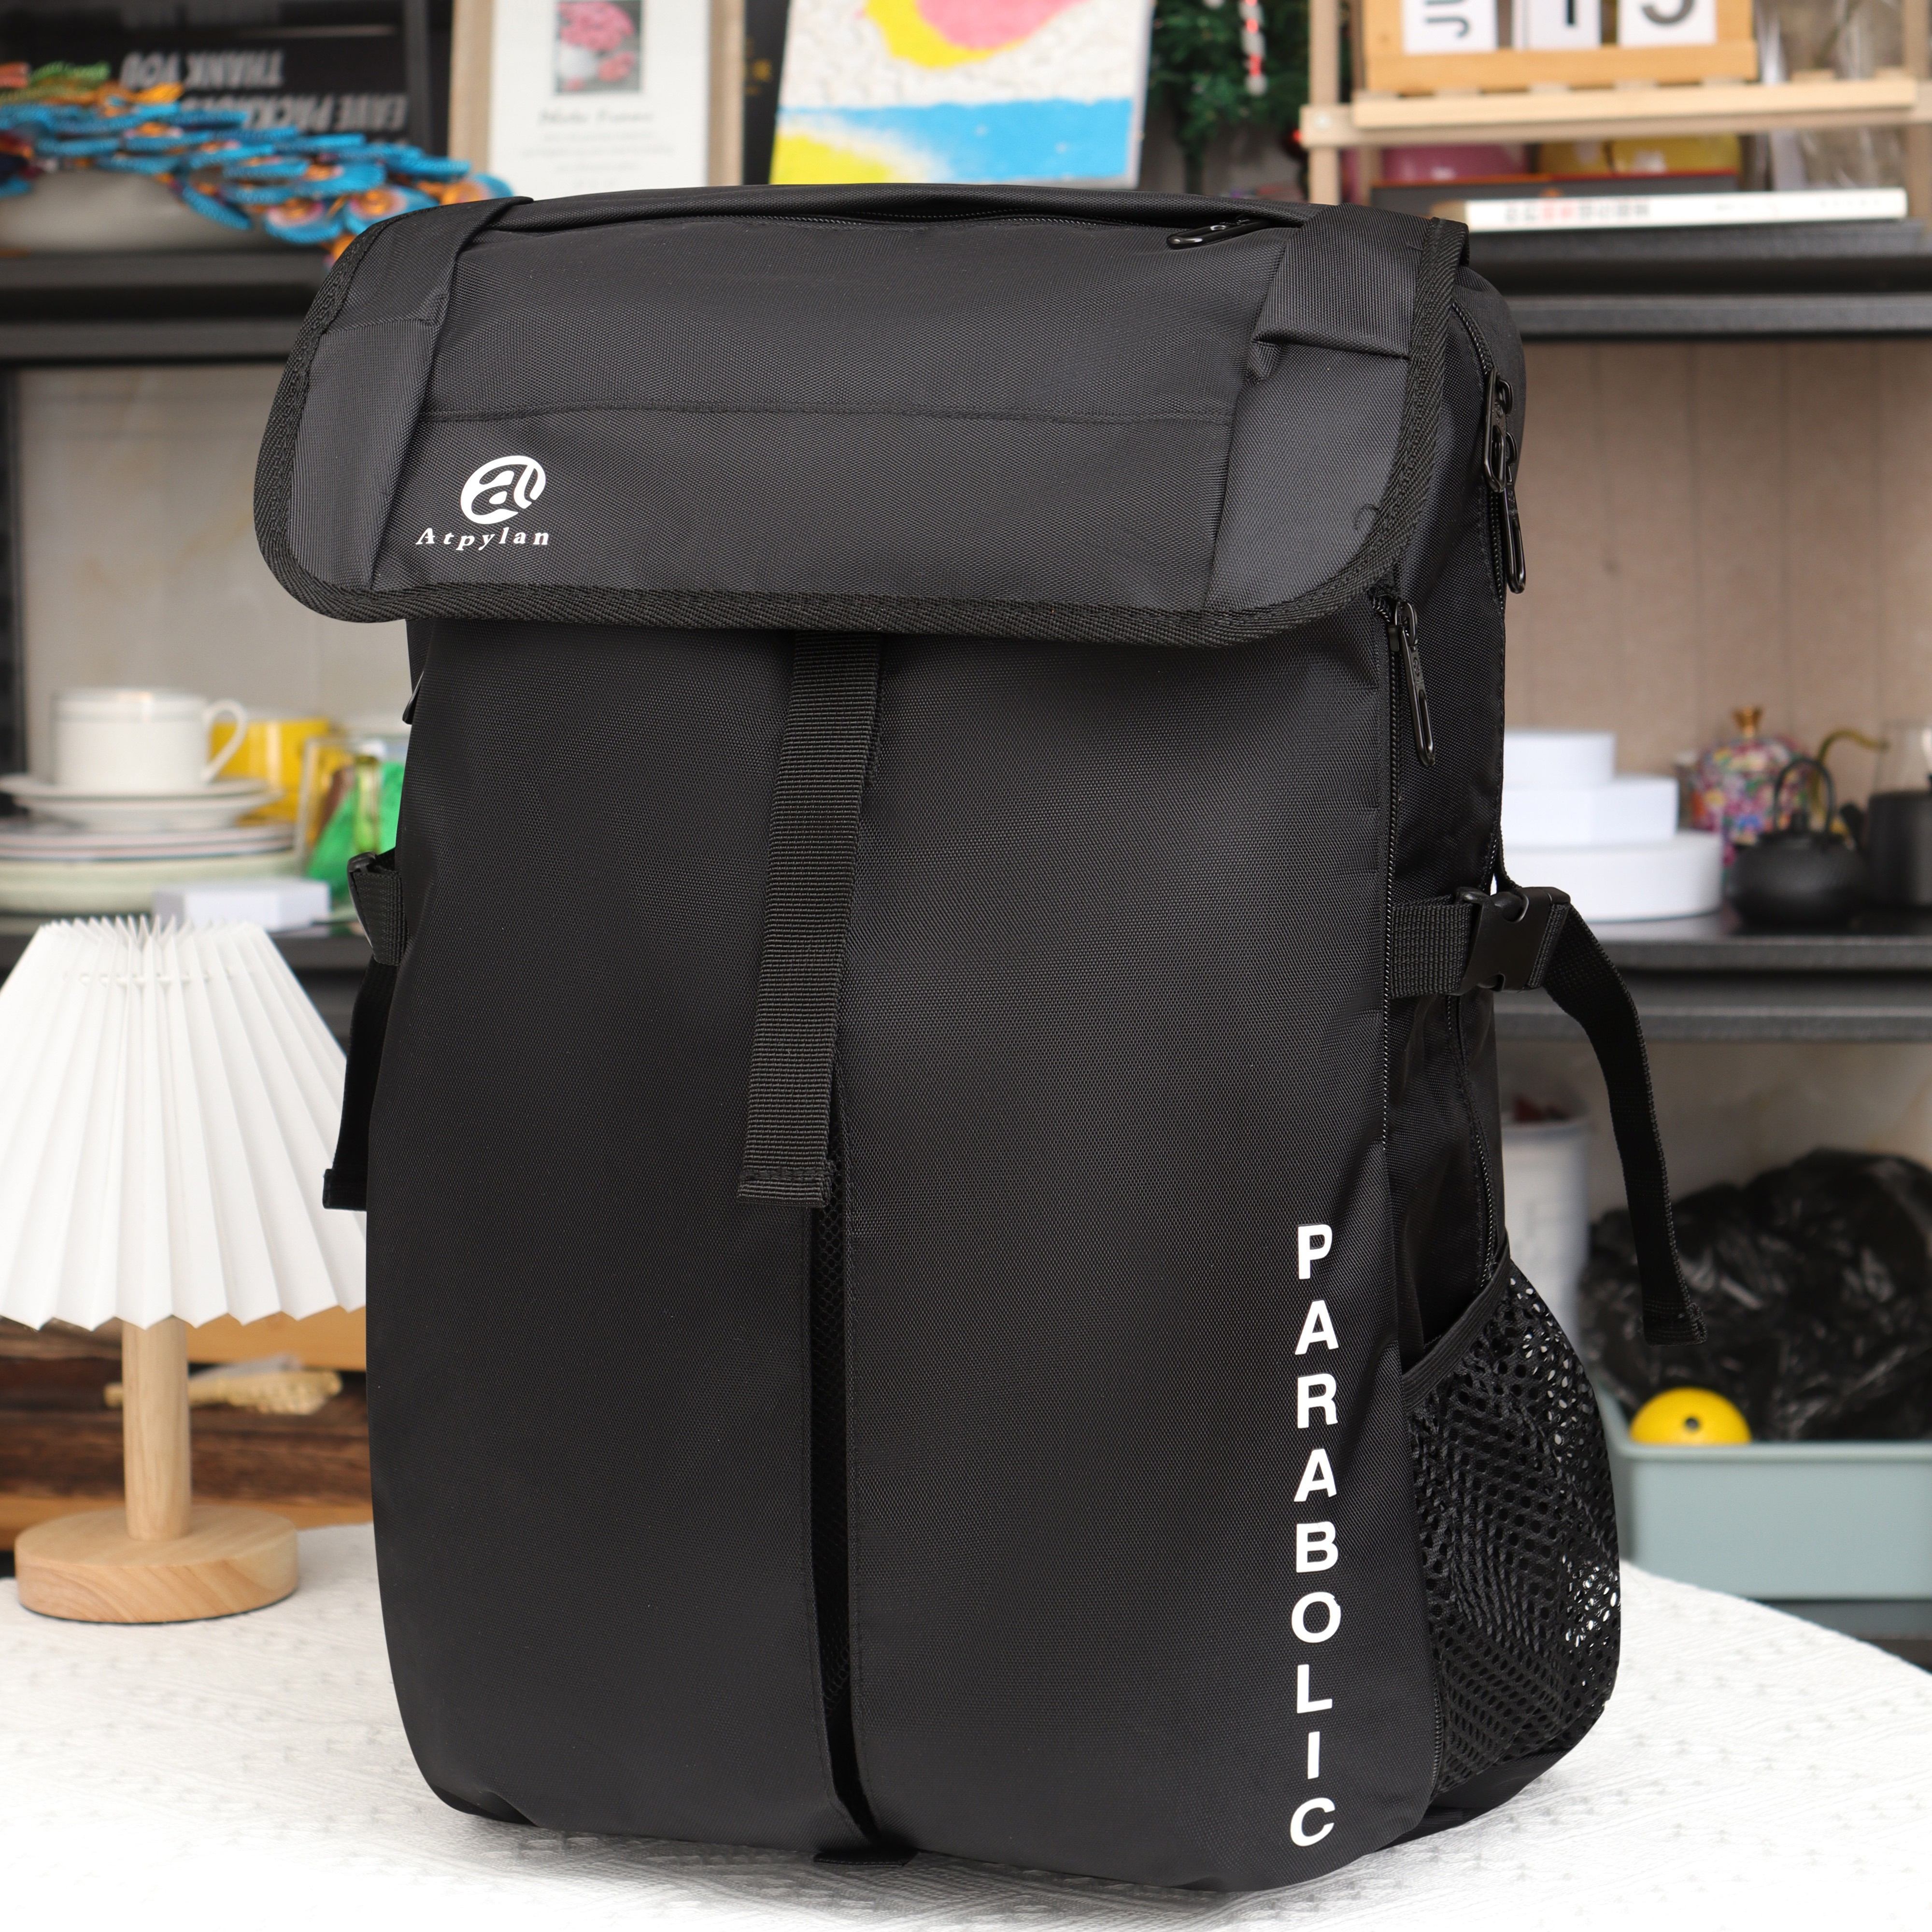  MATEIN Basketball Bag, Durable Soccer Bag with Ball